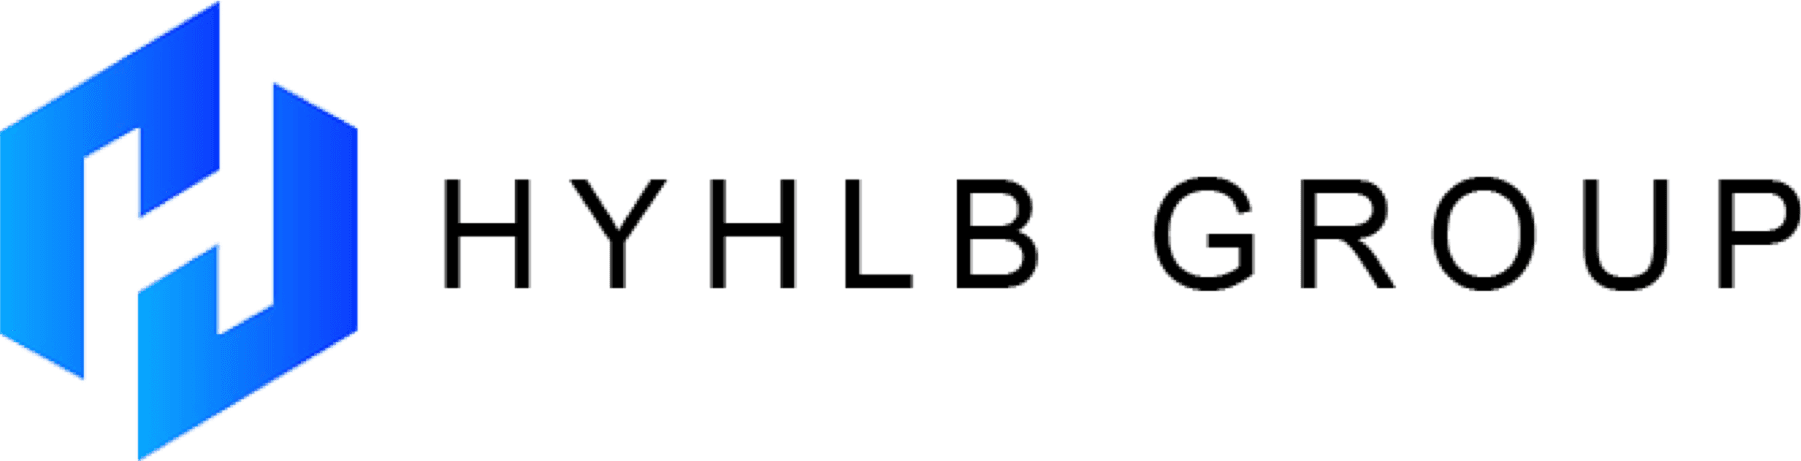 HYHLB Group